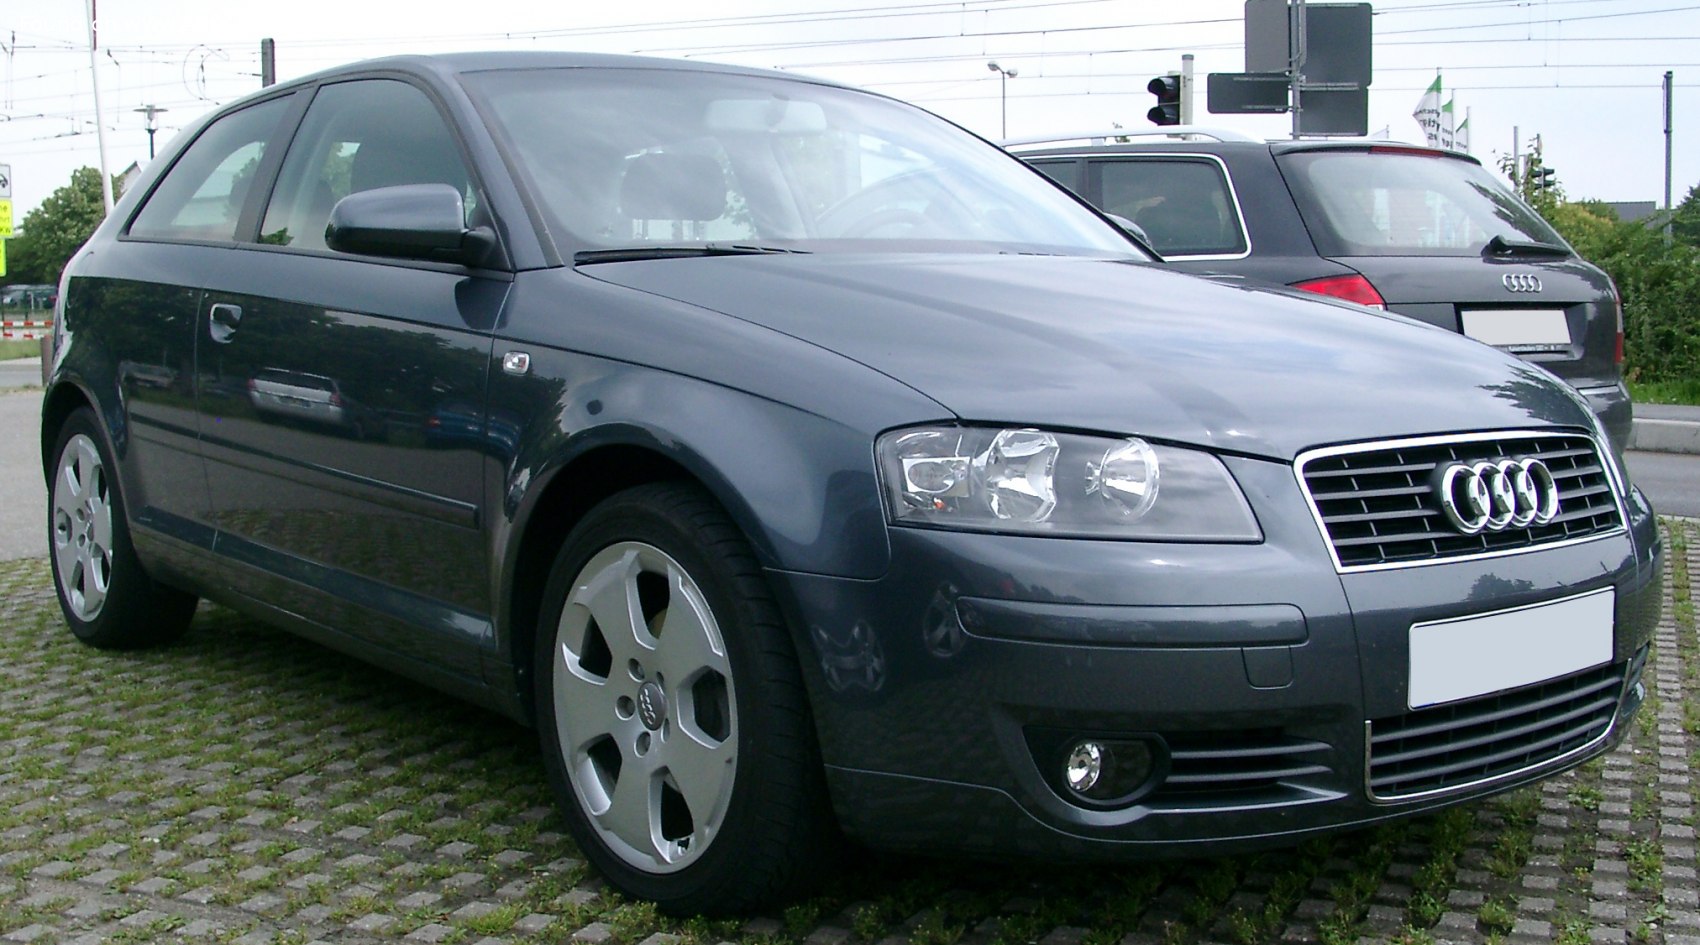 Audi A3 8P - Wikidata